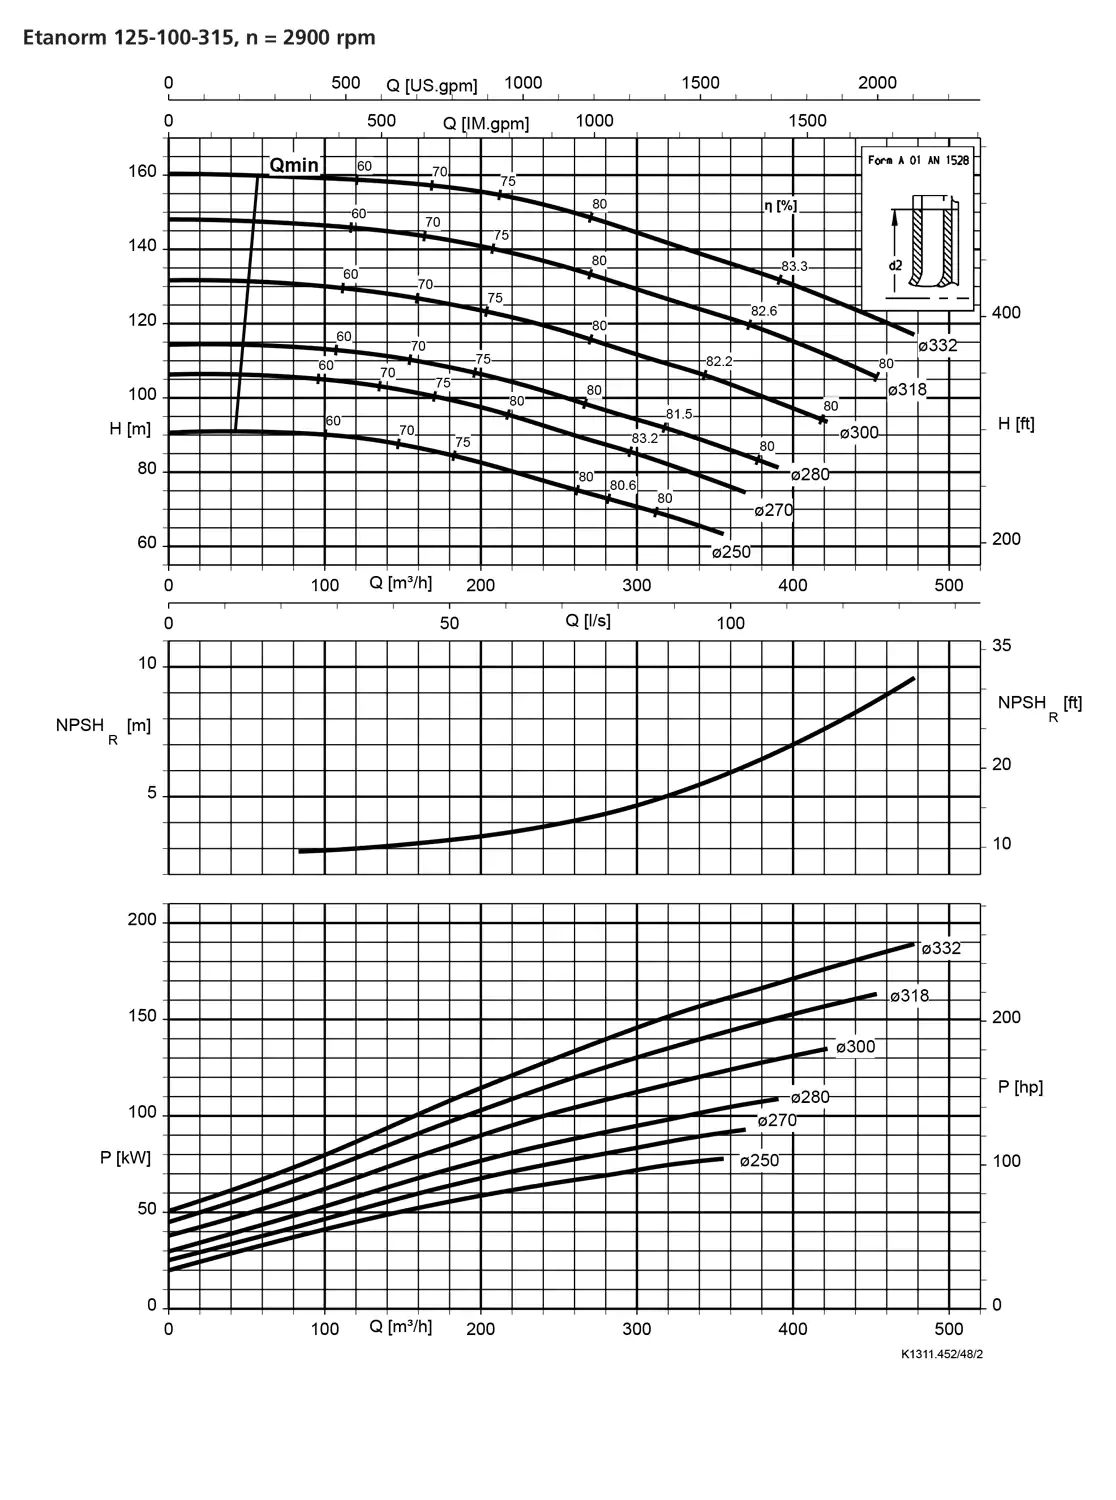 نمودار-کارکرد-پمپ-etanorm-syt-125-100-315-2900